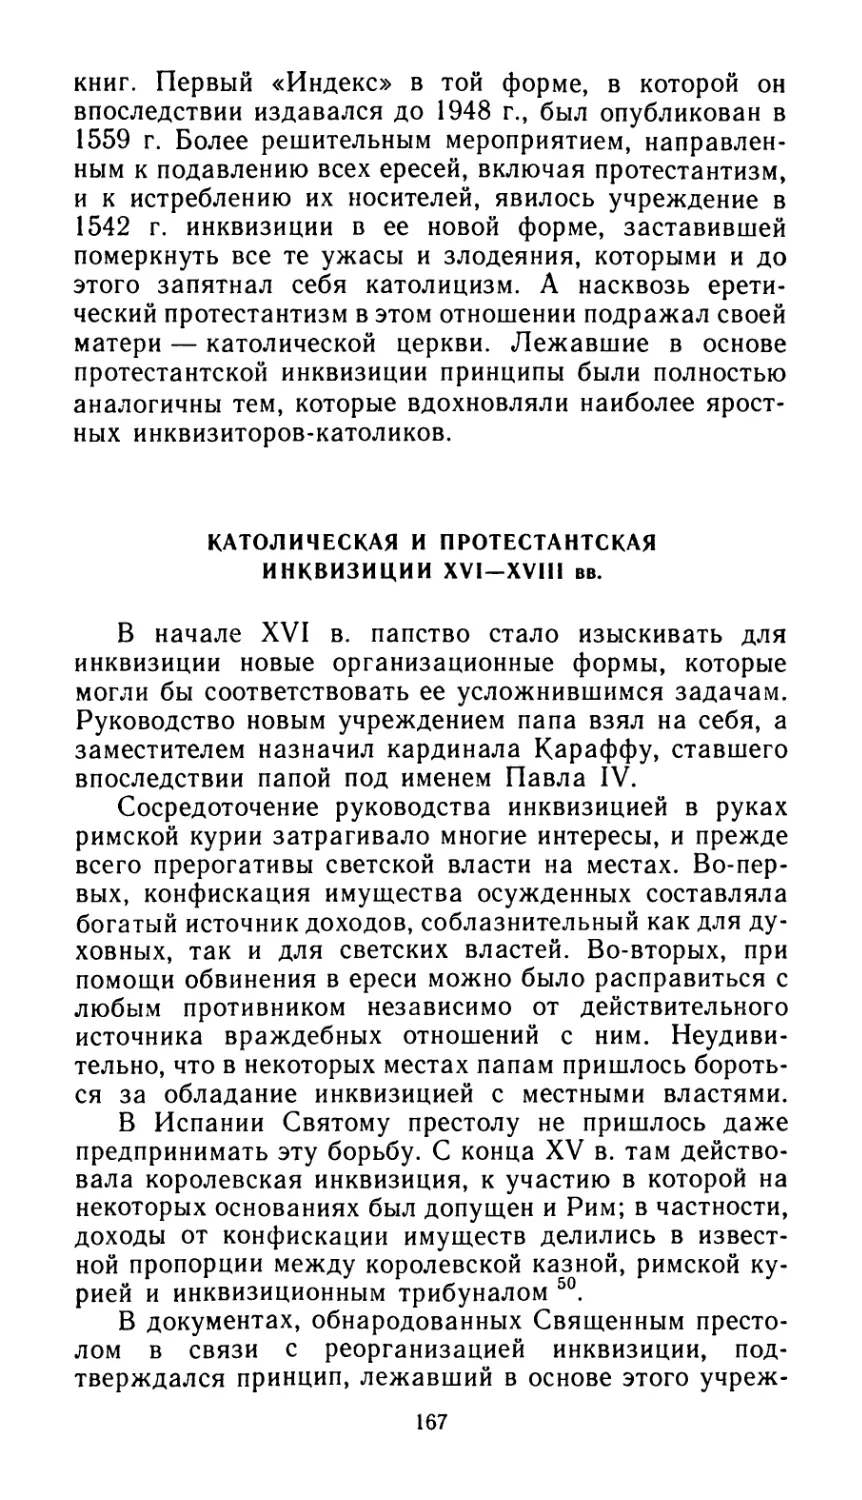 Католическая и протестантская инквизиция XVI — XVIII вв.